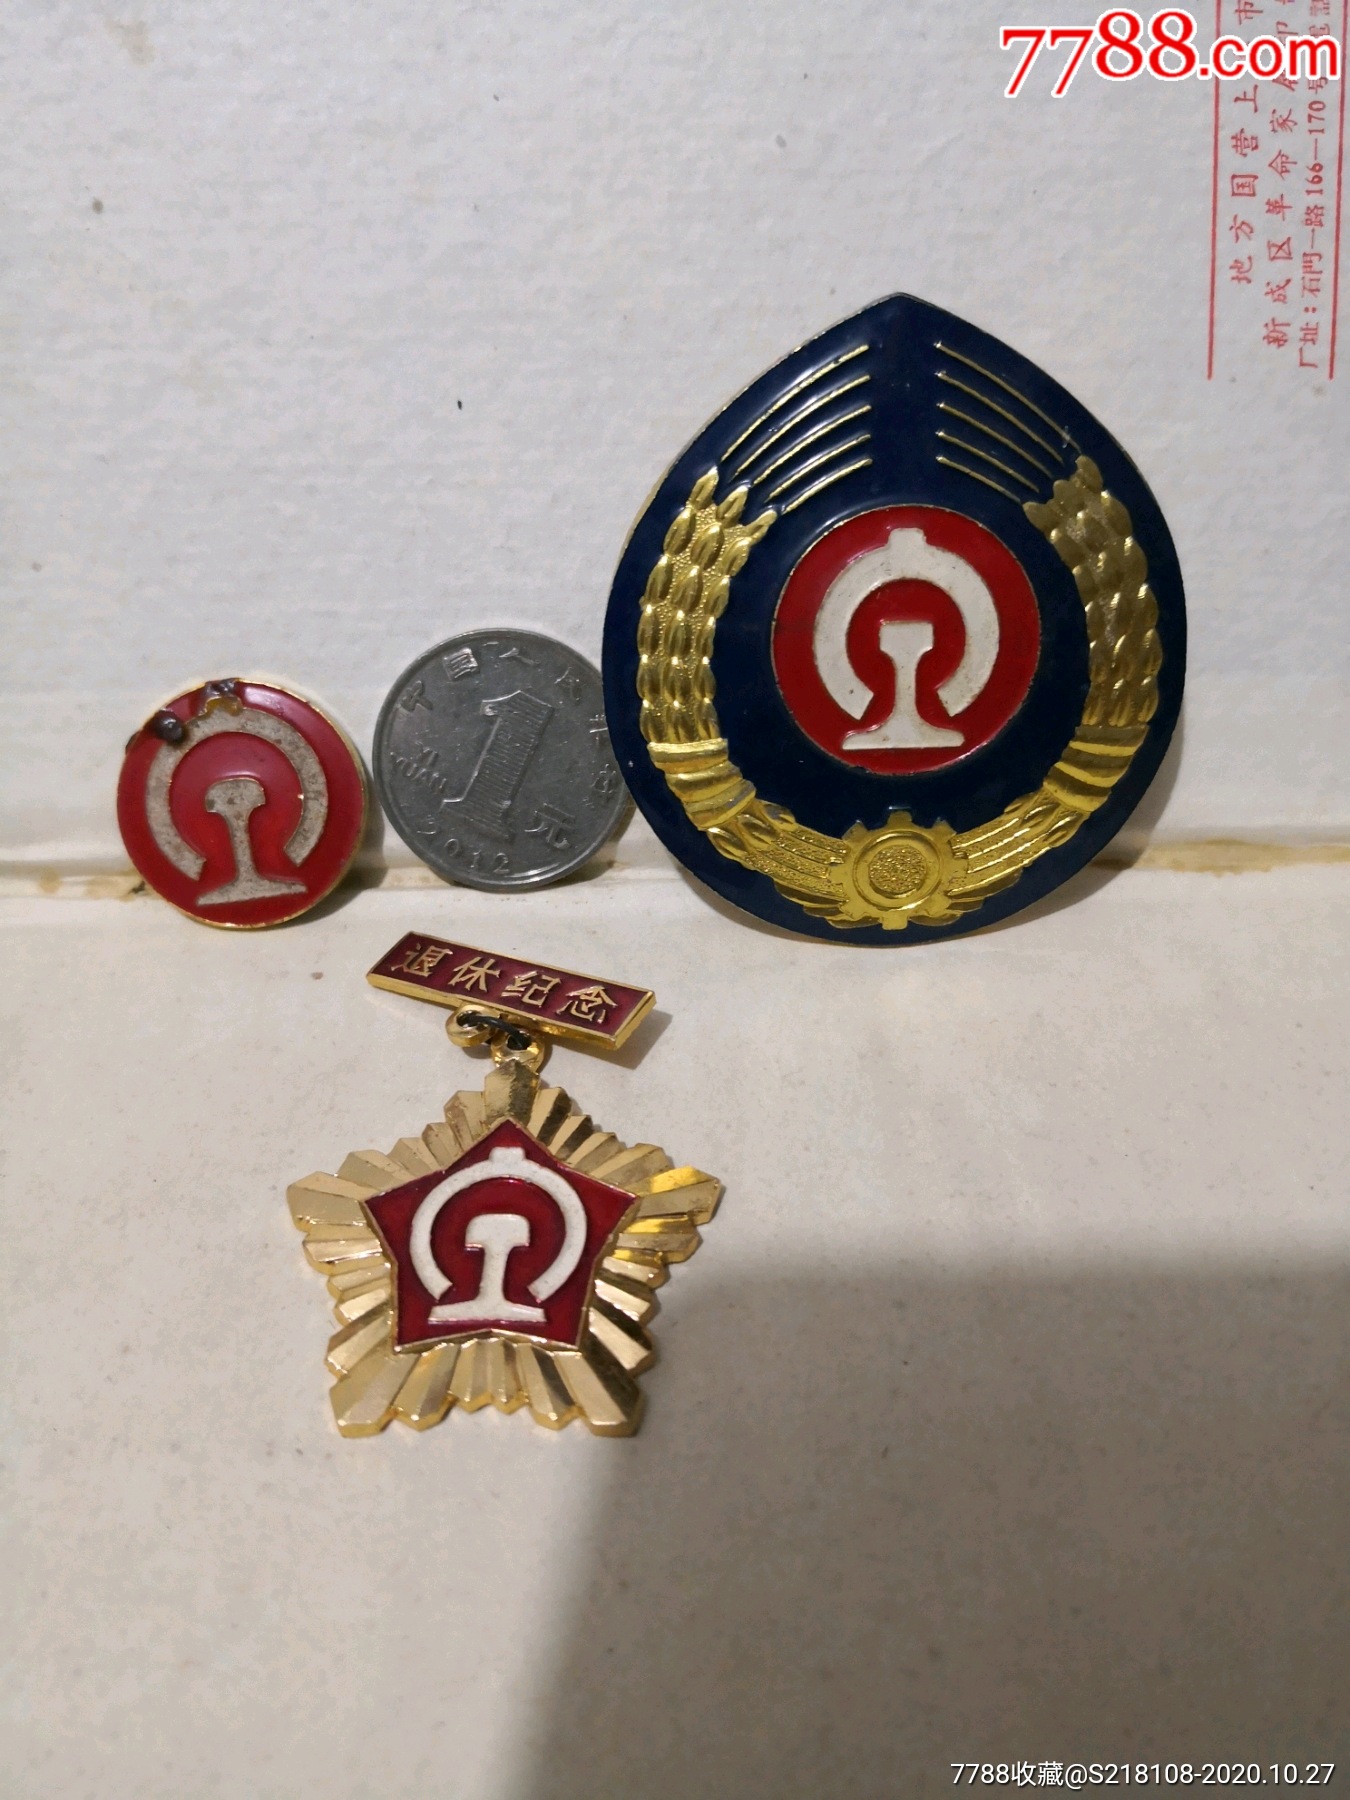 上海铁路局胸章退休纪念章老帽徽一共3件